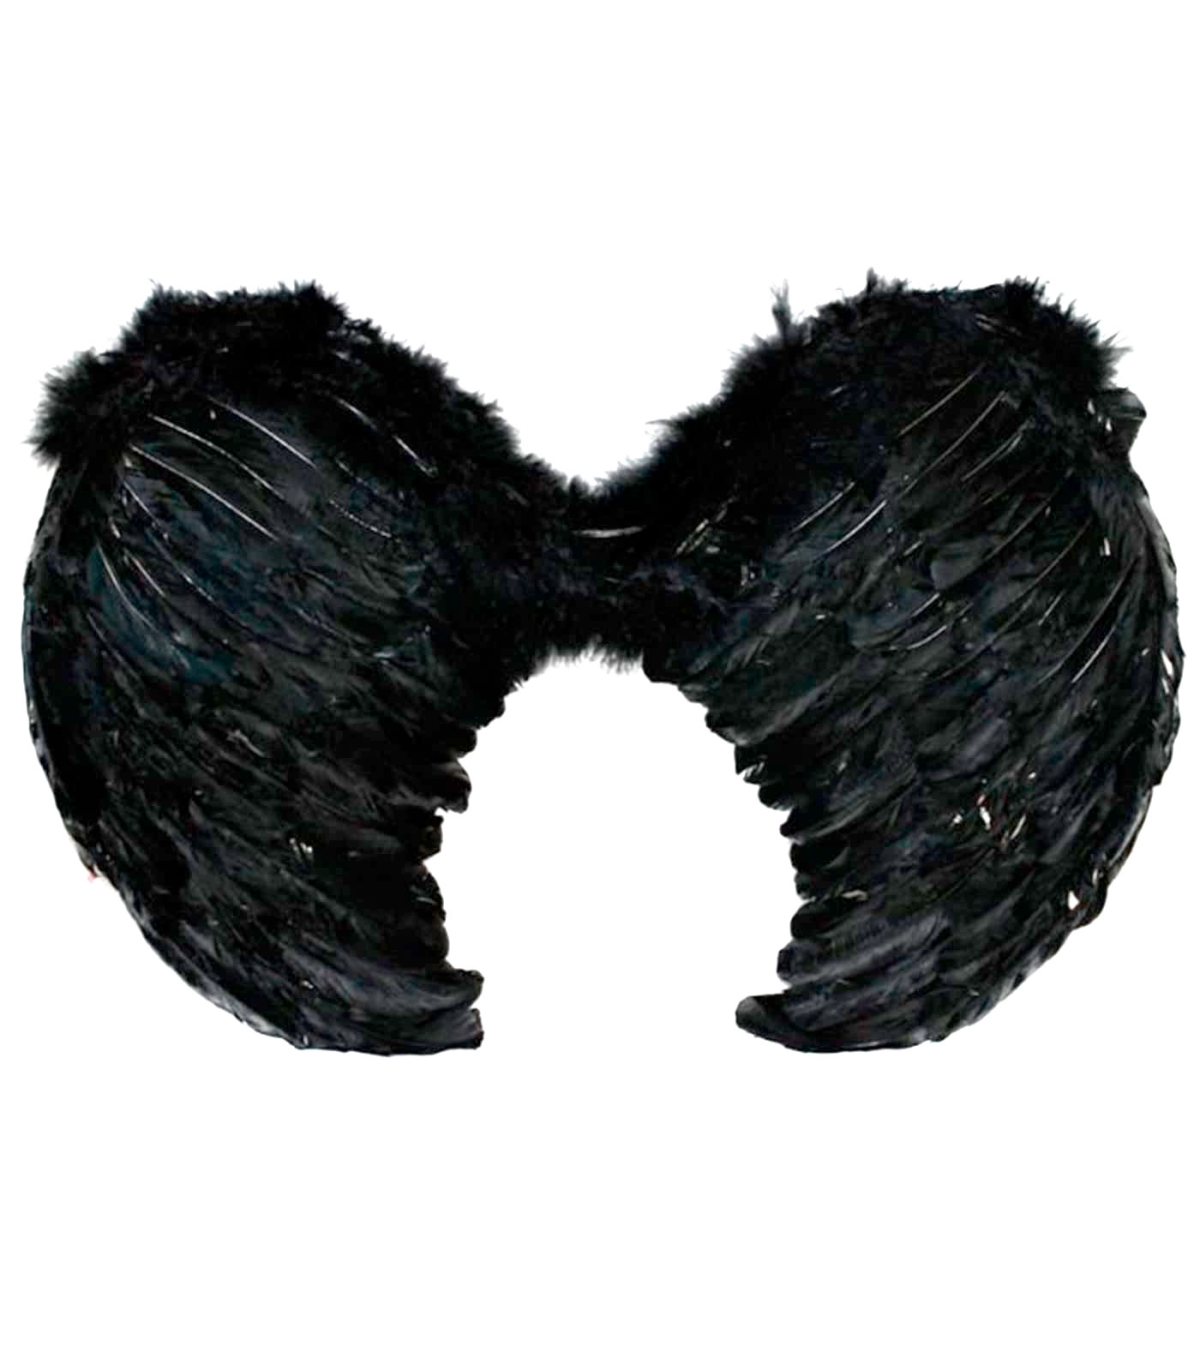 Tradineur - Gafas de gata negra para jóvenes y adultos, complementos de  disfraces para carnaval, halloween u otras celebraciones